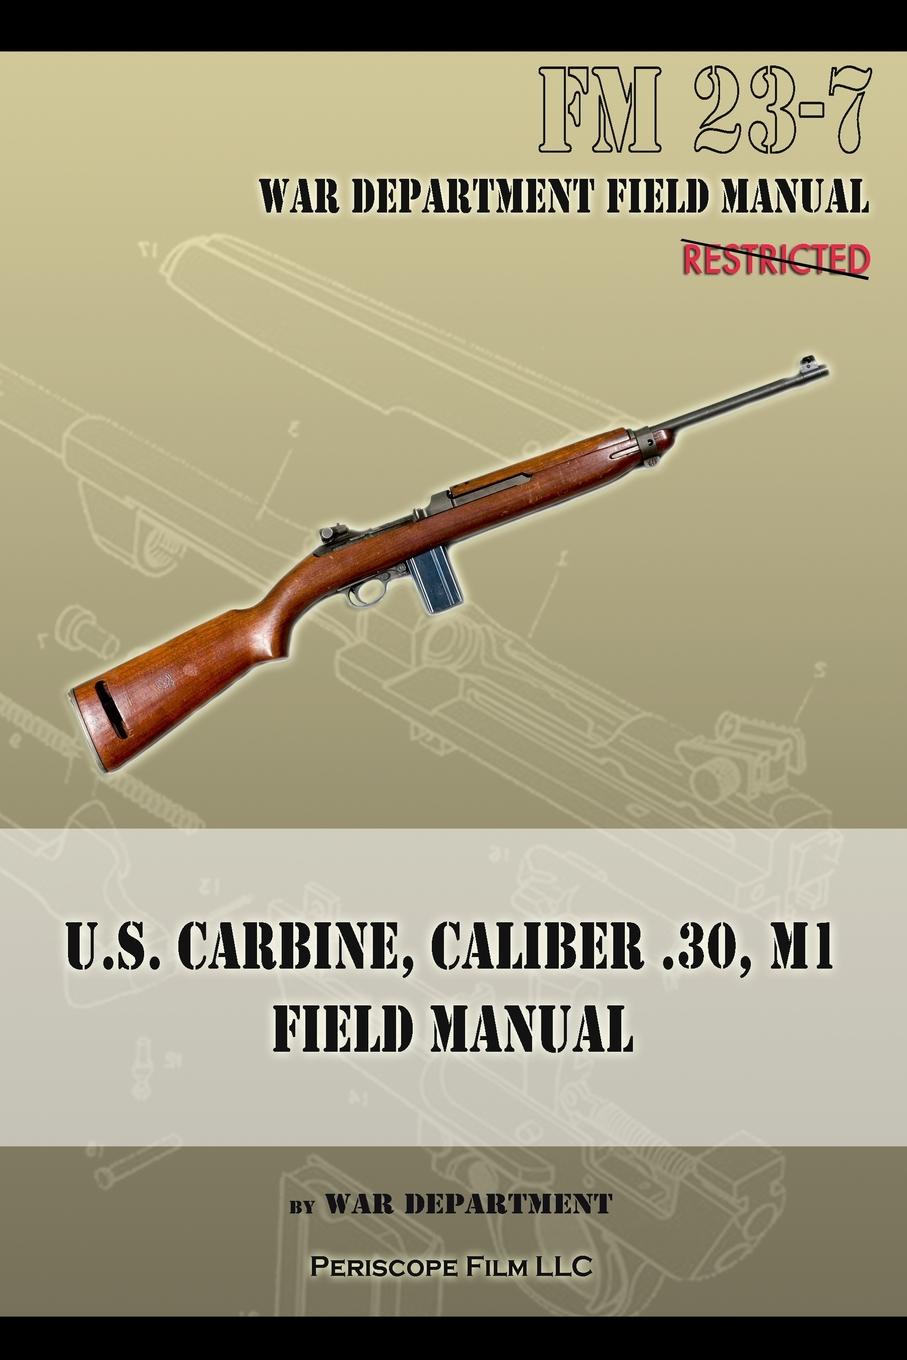 U.S. Carbine, Caliber .30, M1 Field Manual. FM 23-7